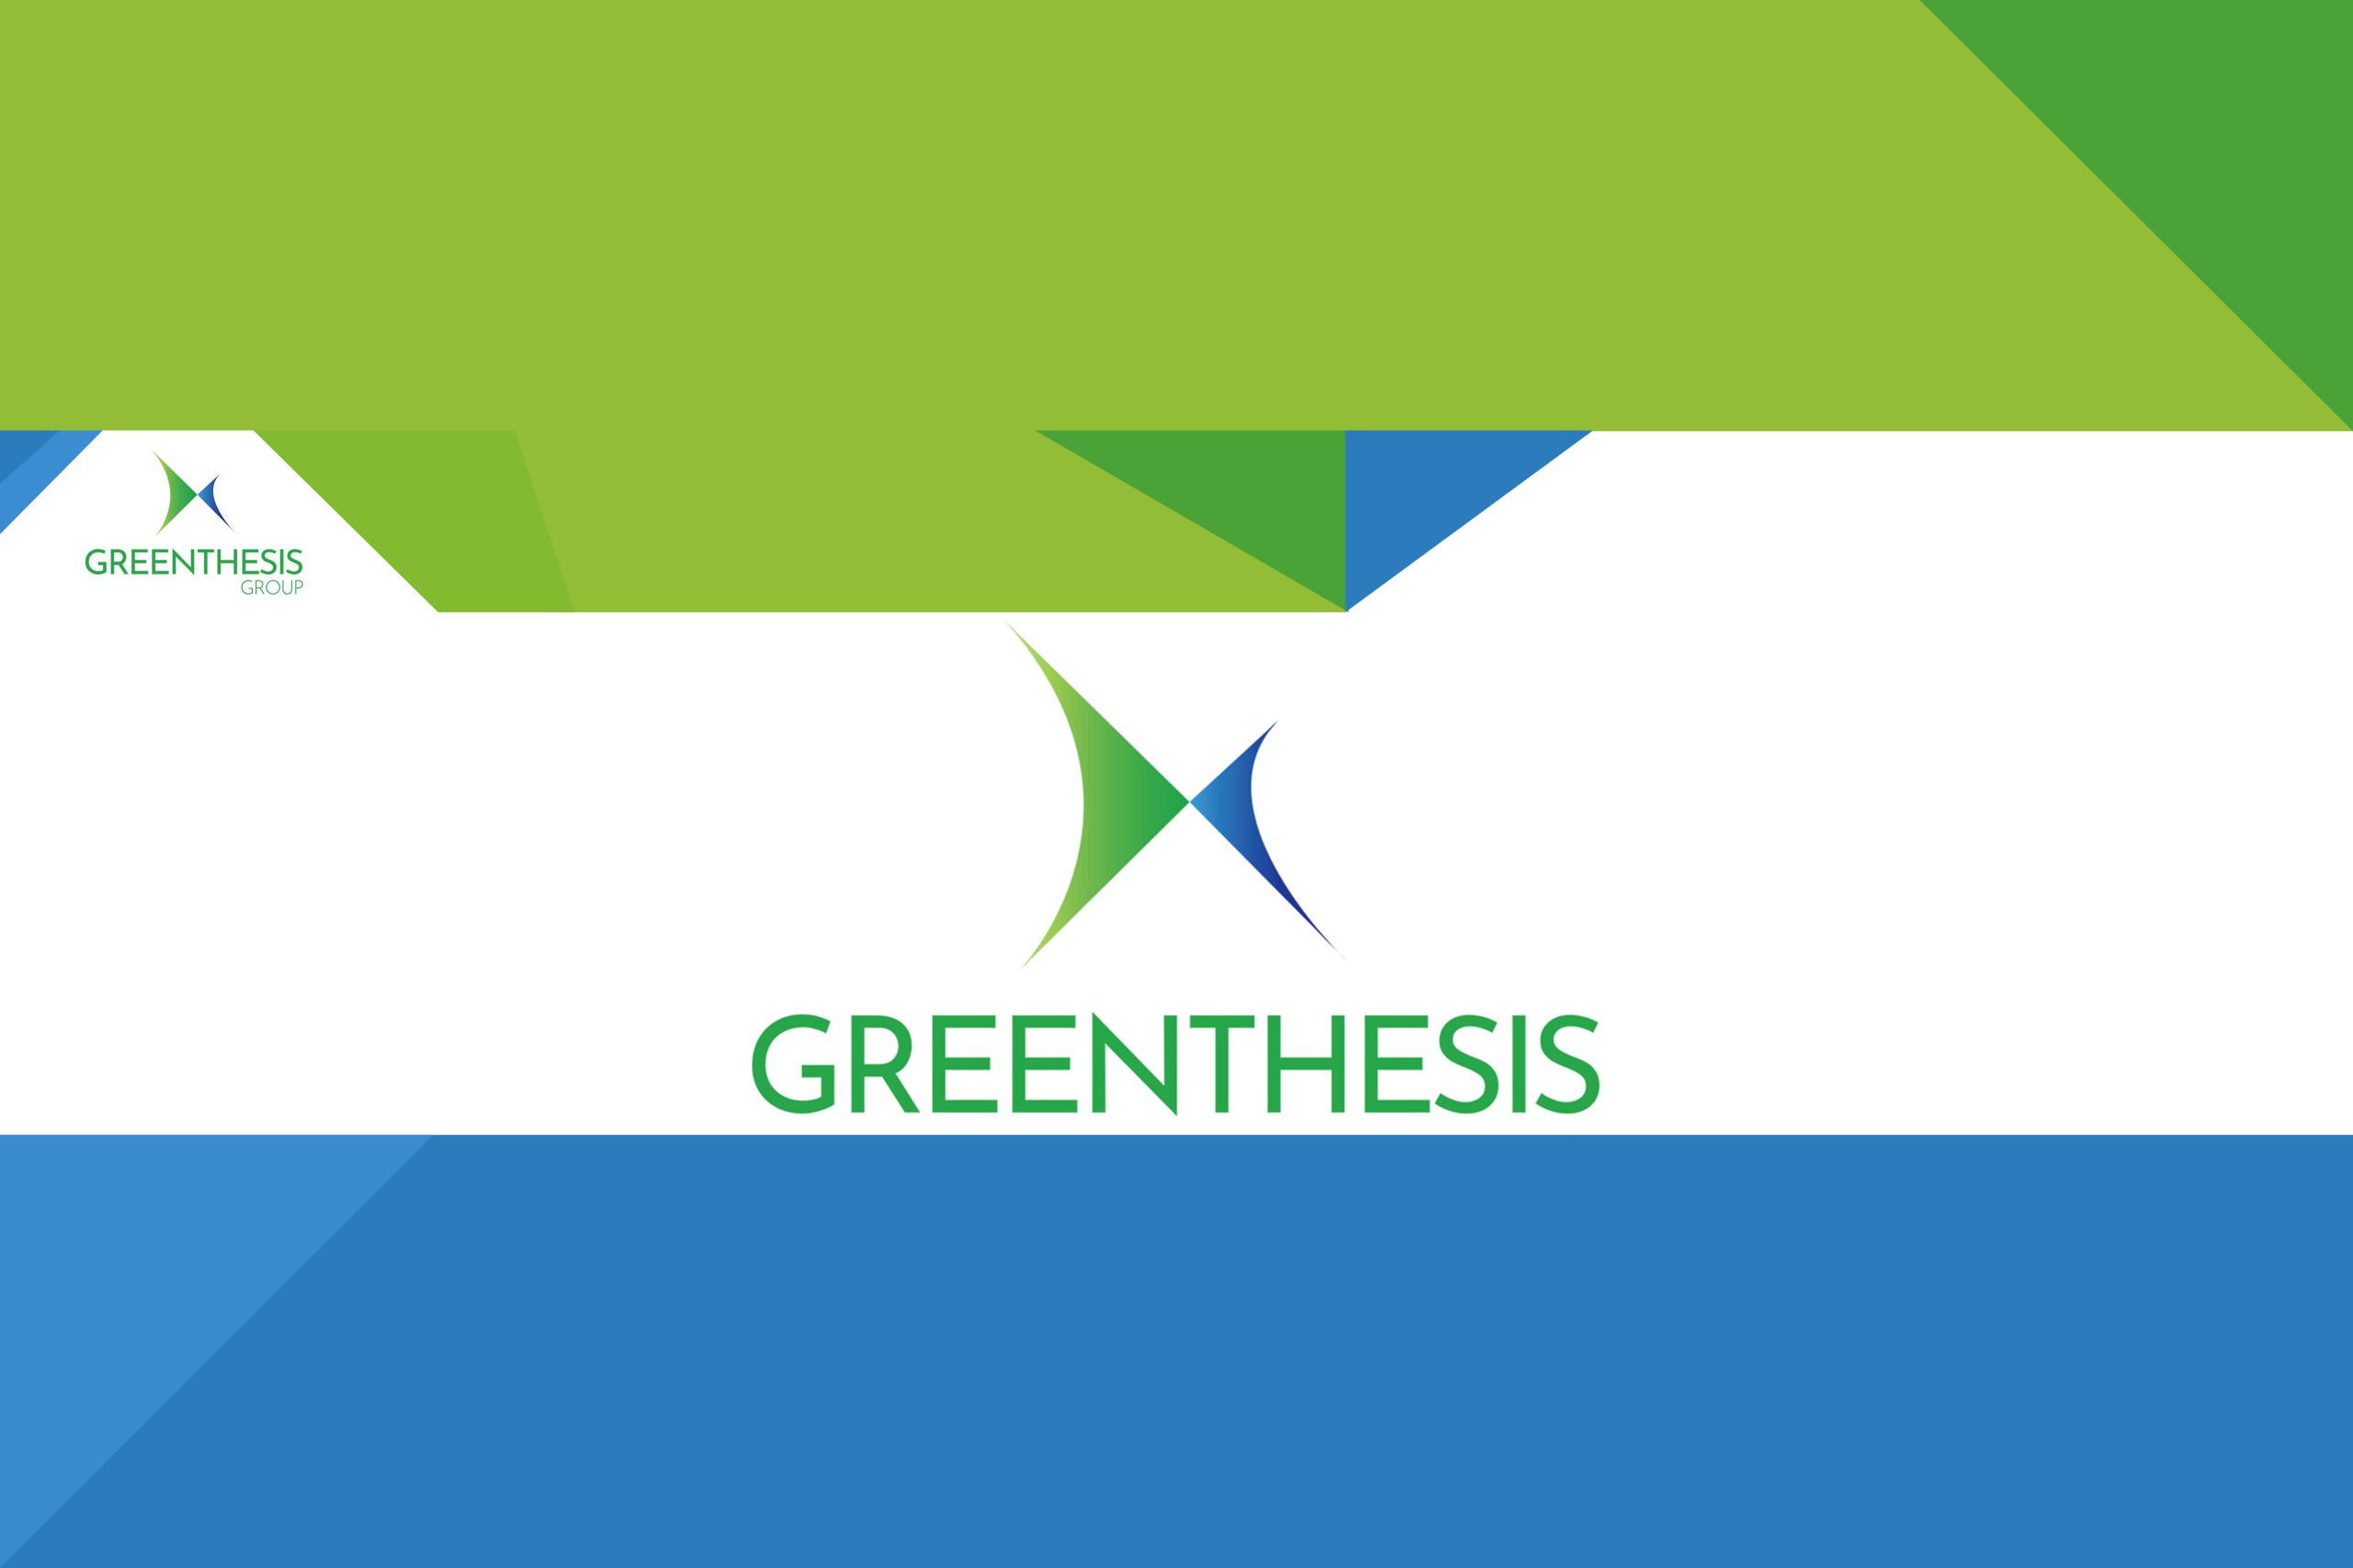 Il Gruppo Greenthesis integra la propria struttura operativa nella filiera della produzione di energia e biocarburanti avanzati da fonti rinnovabili